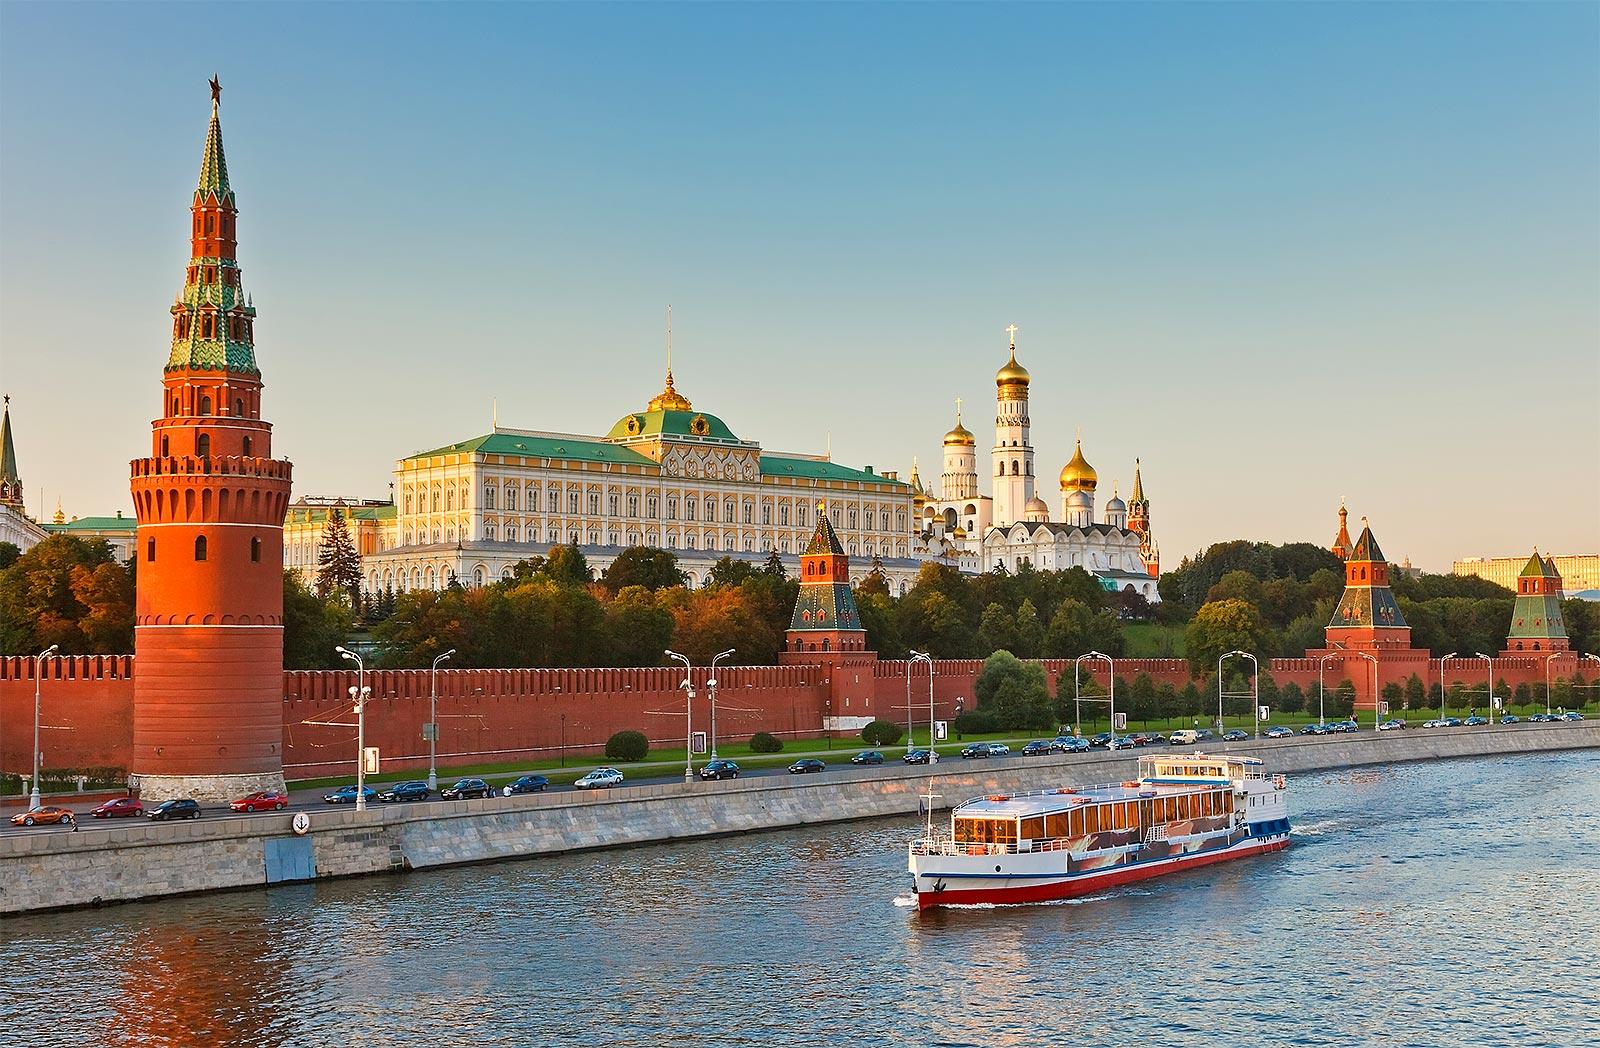 Санкт-Петербурга - Авиабилеты в Москву из Санкт-Петербурга в мае всего за 3000 рублей туда-обратно!